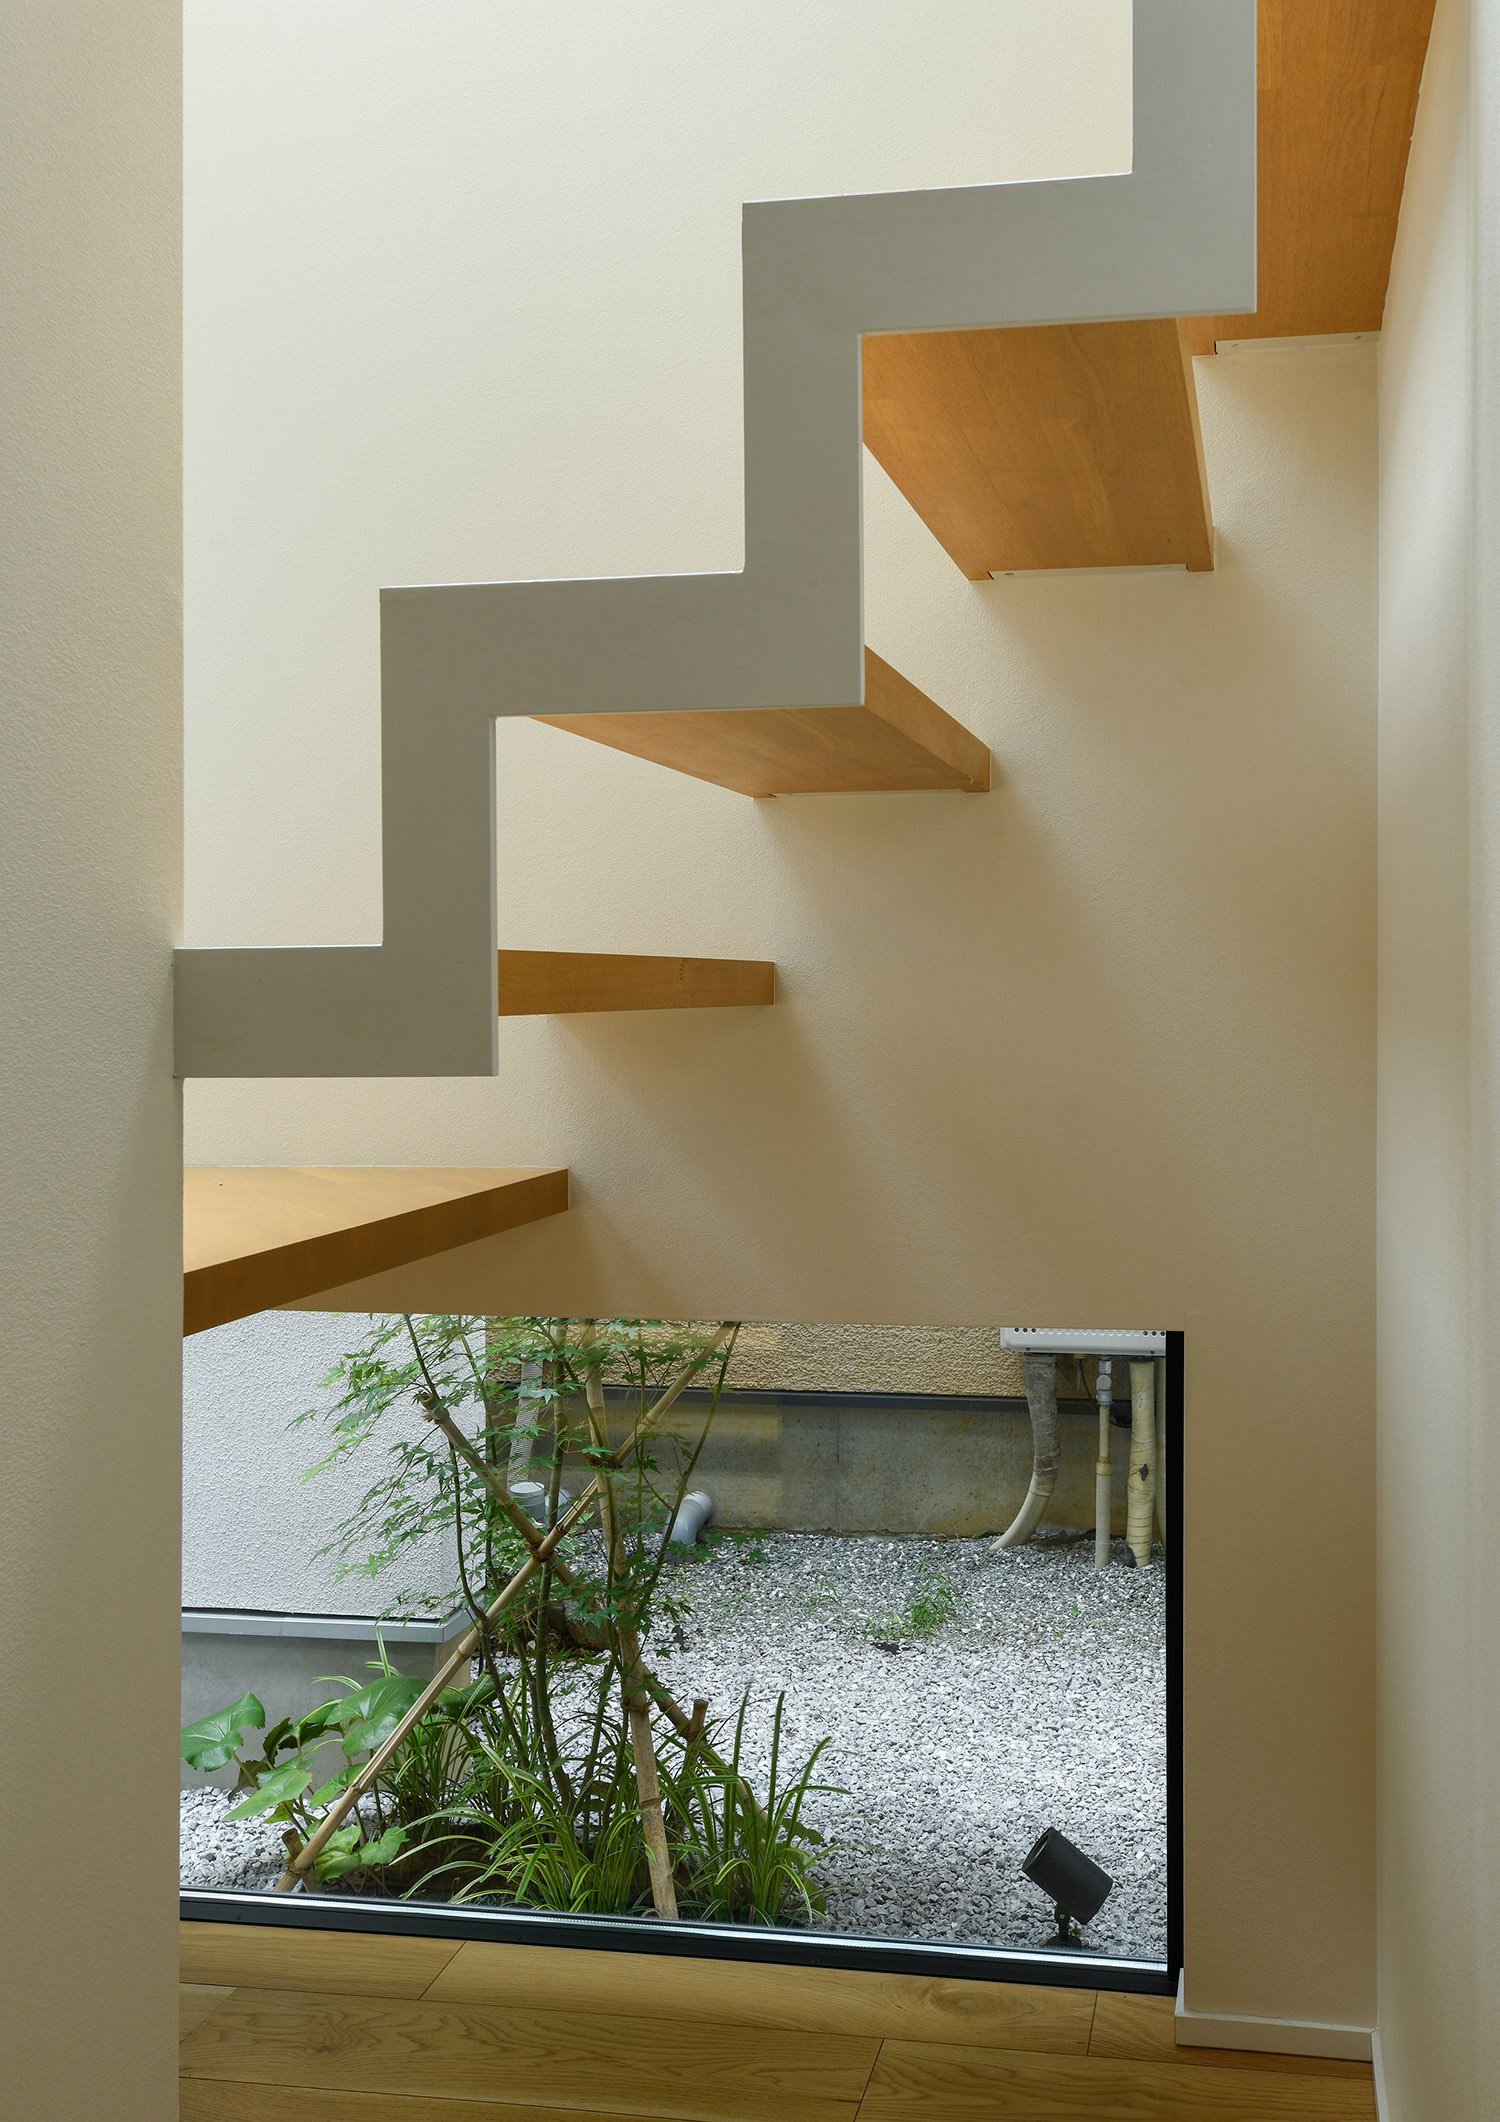 植栽が見える窓を階段下に設けたおしゃれなデザイン・デザイン住宅